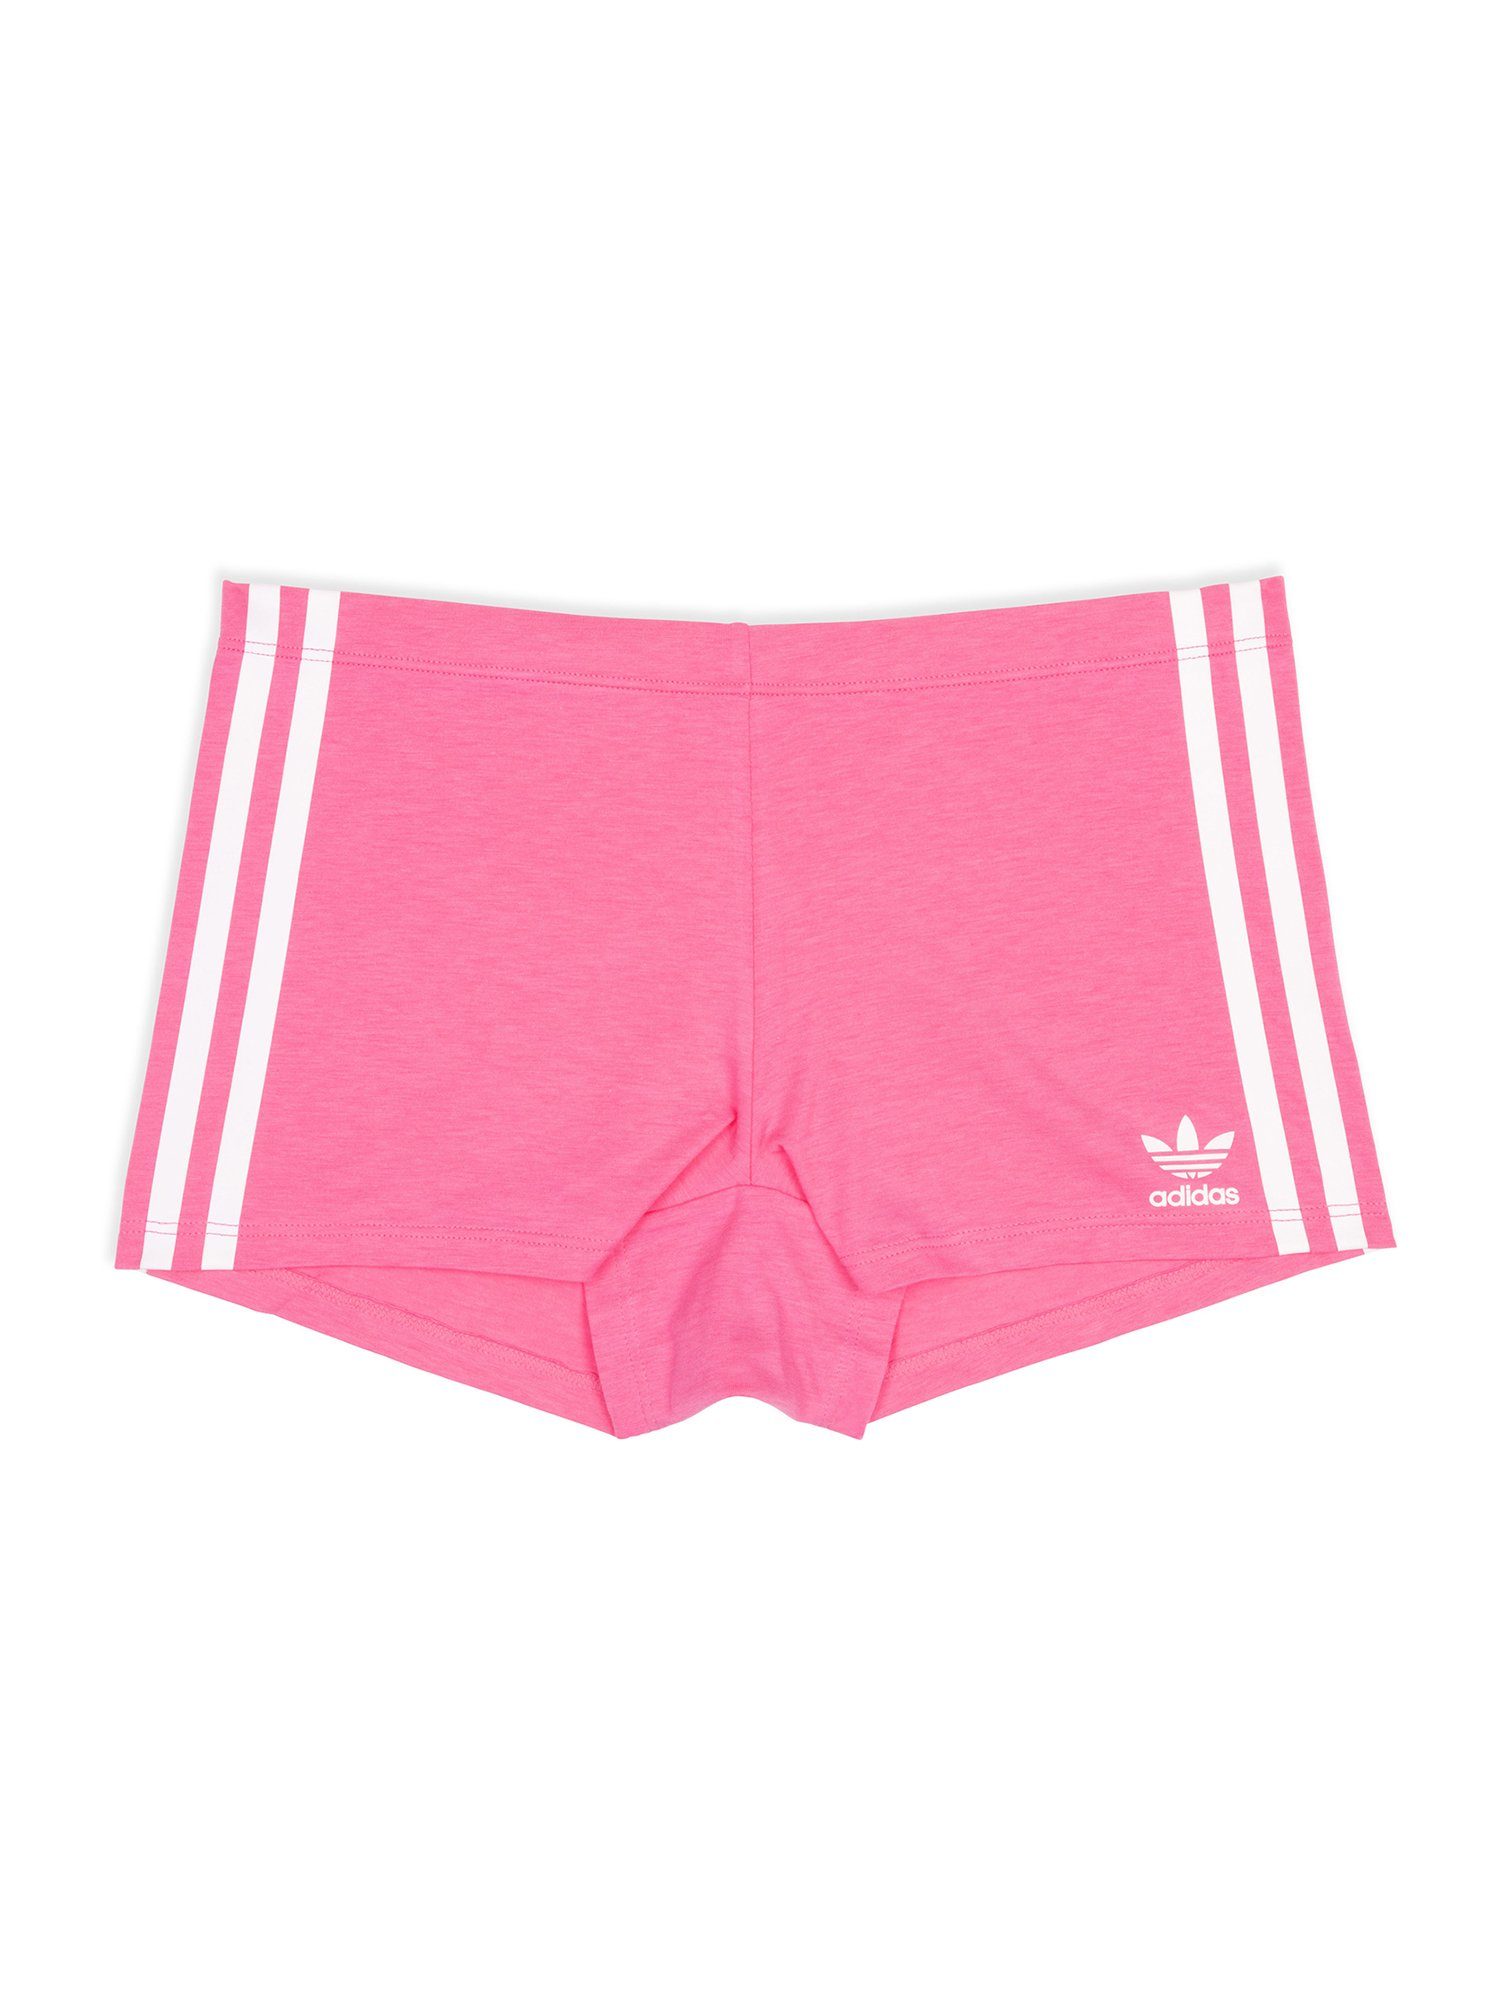 adidas Originals Boxer Biker Short unterhose unterwäsche boxershort lucid pink